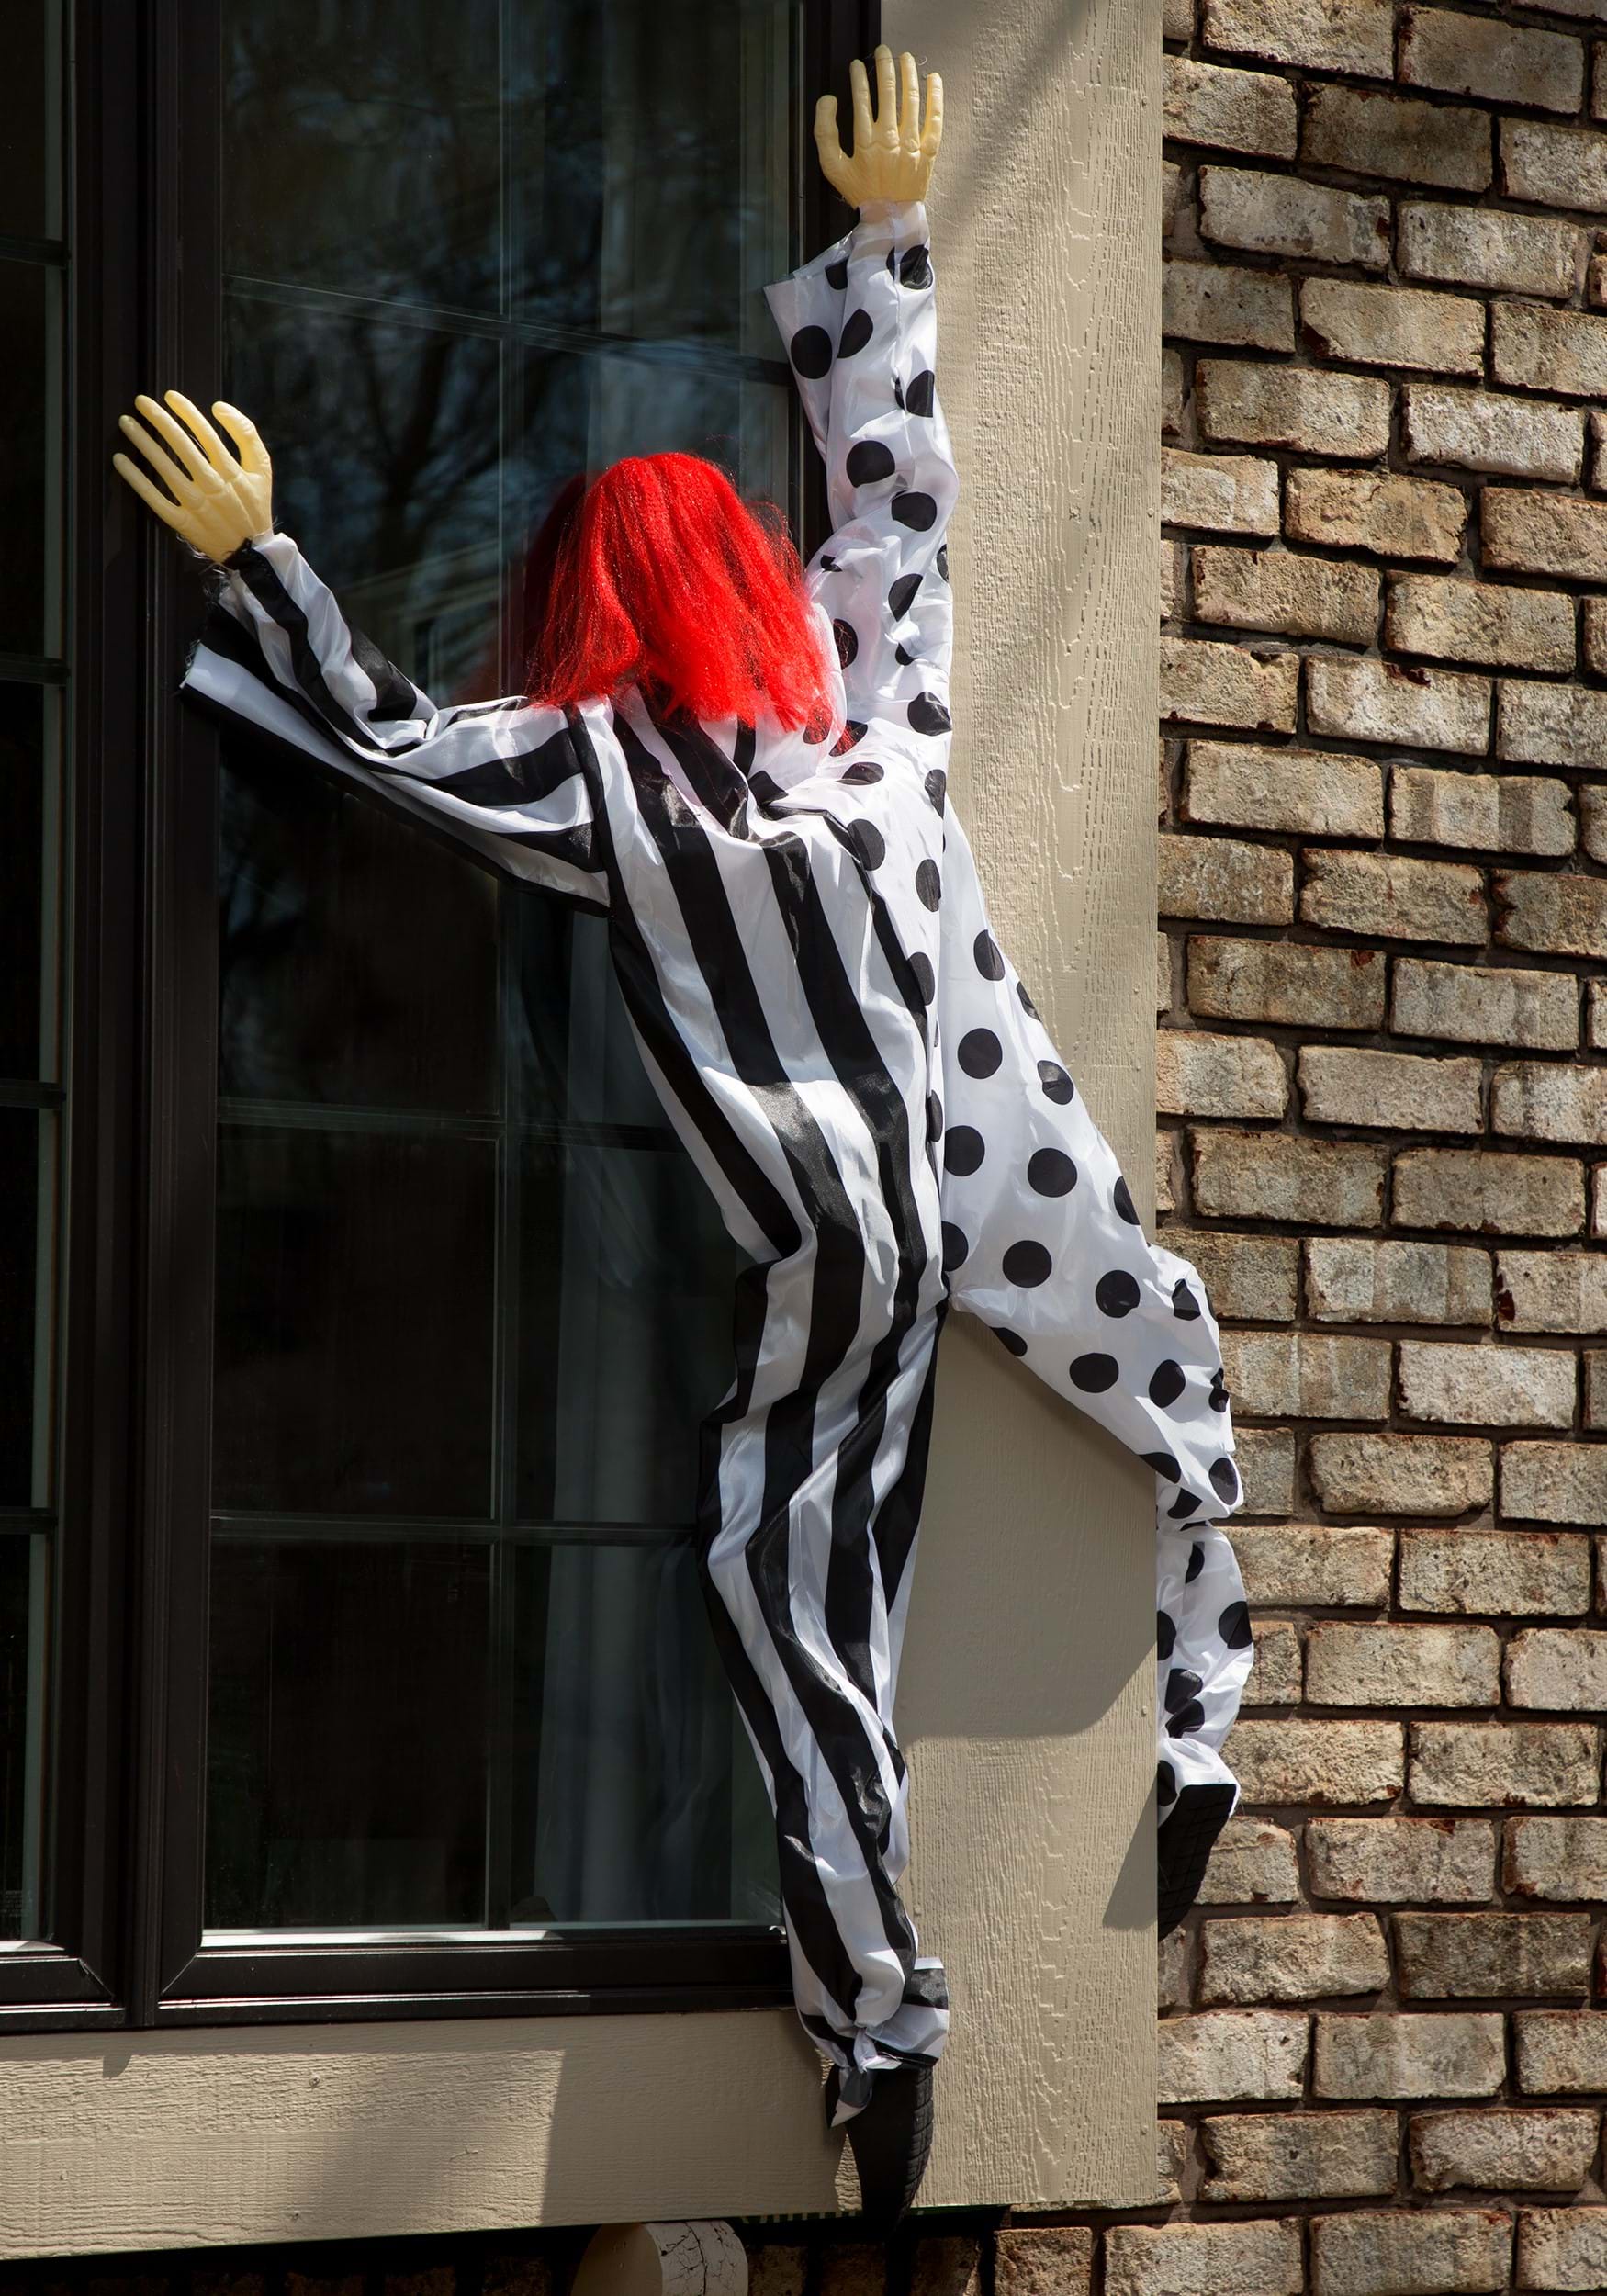 Killer Clown Window Hanging Halloween Prop